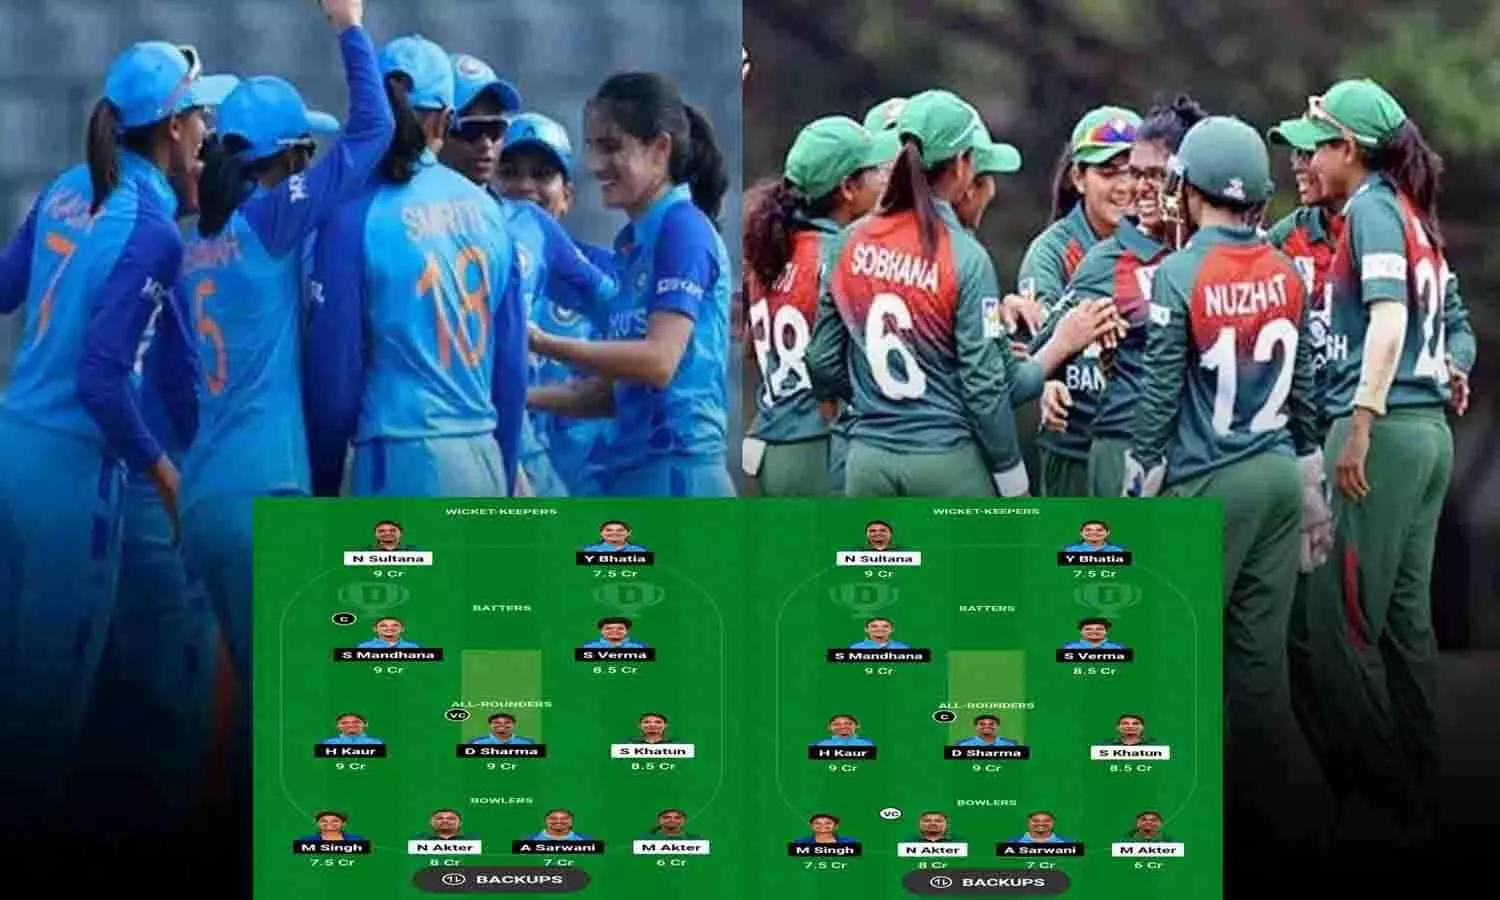 BD-W vs IN-W Dream11 Prediction In Hindi: India Women vs Bangladesh Women Dream11 इस तरह बनाएं टीम, 100% बन जायेंगे मालामाल